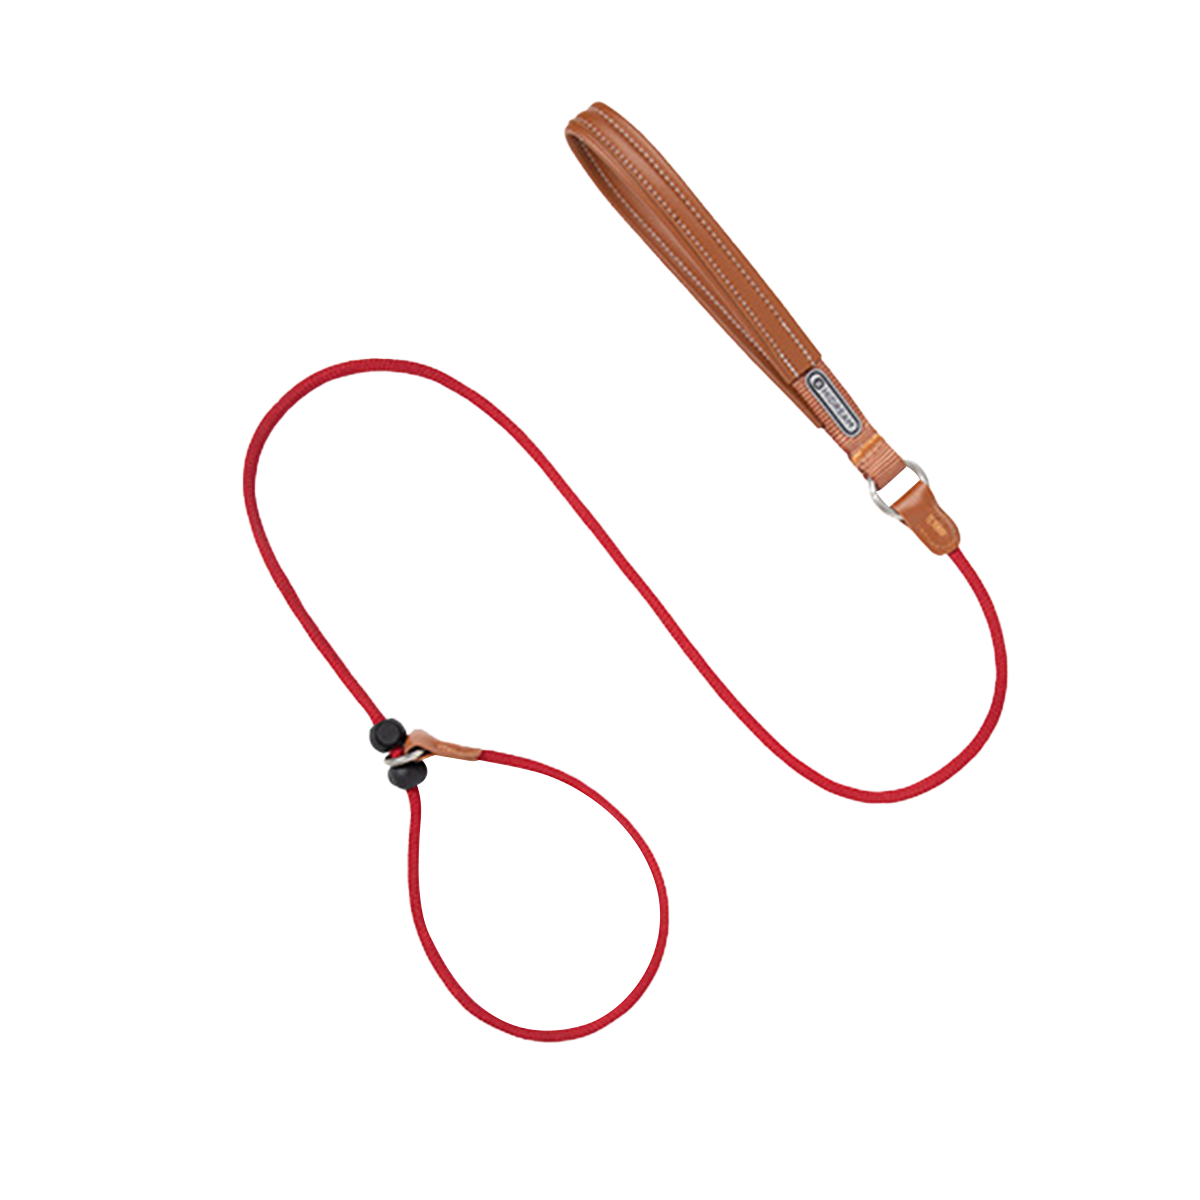 HIDREAM 啵啵系列 寵物皮革手柄一體牽繩 寵物牽繩